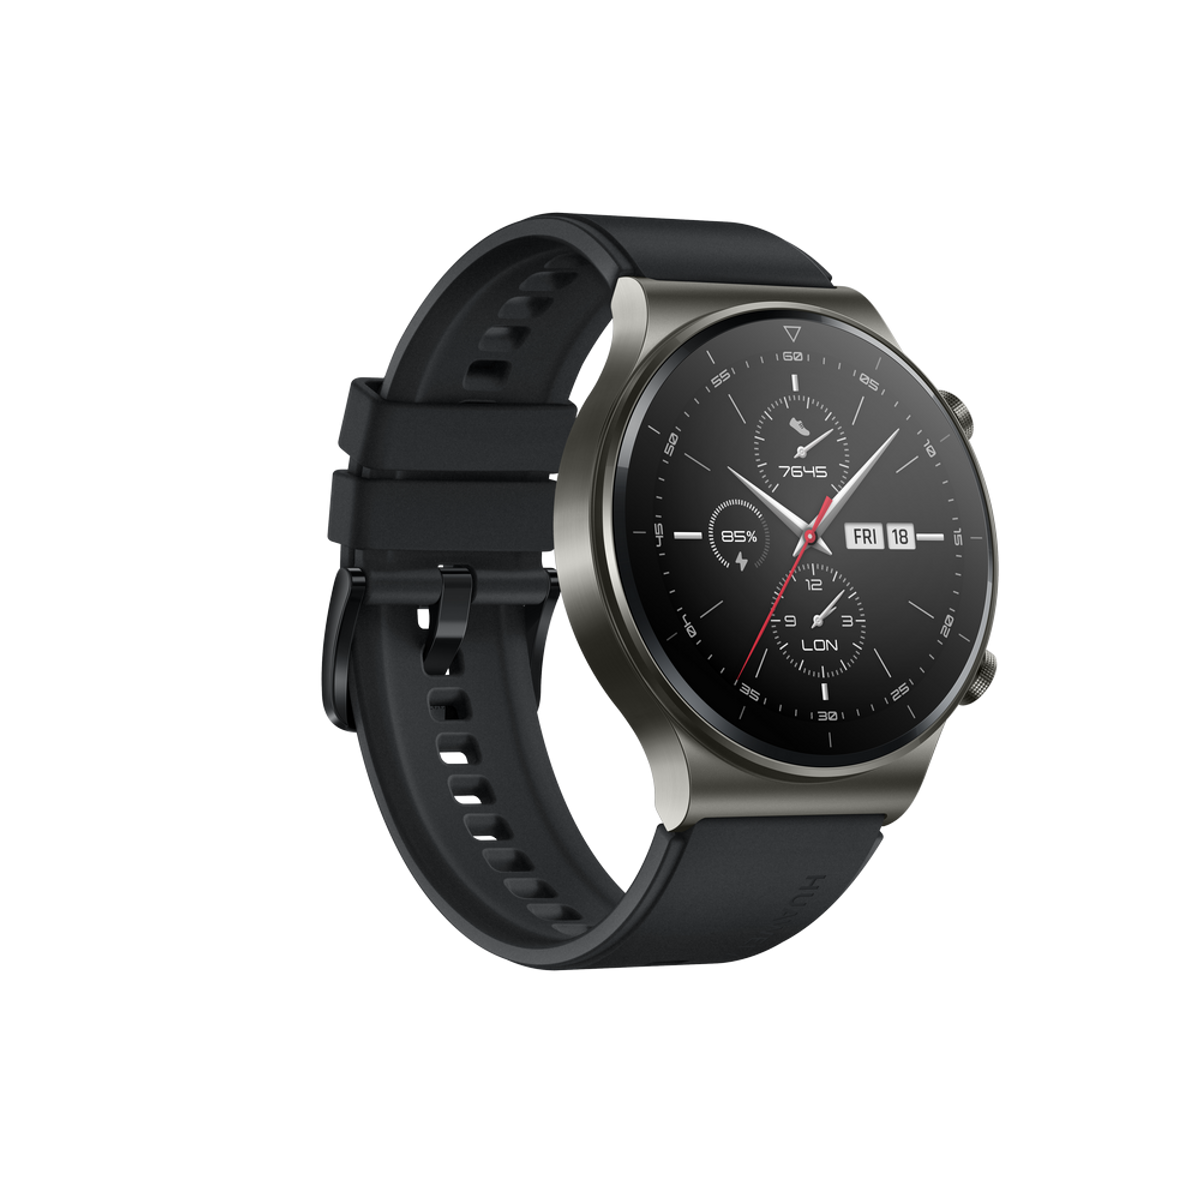 HUAWEI Watch 140-210 GT Silikonarmband, Pro mm, schwarz Smartwatch 2